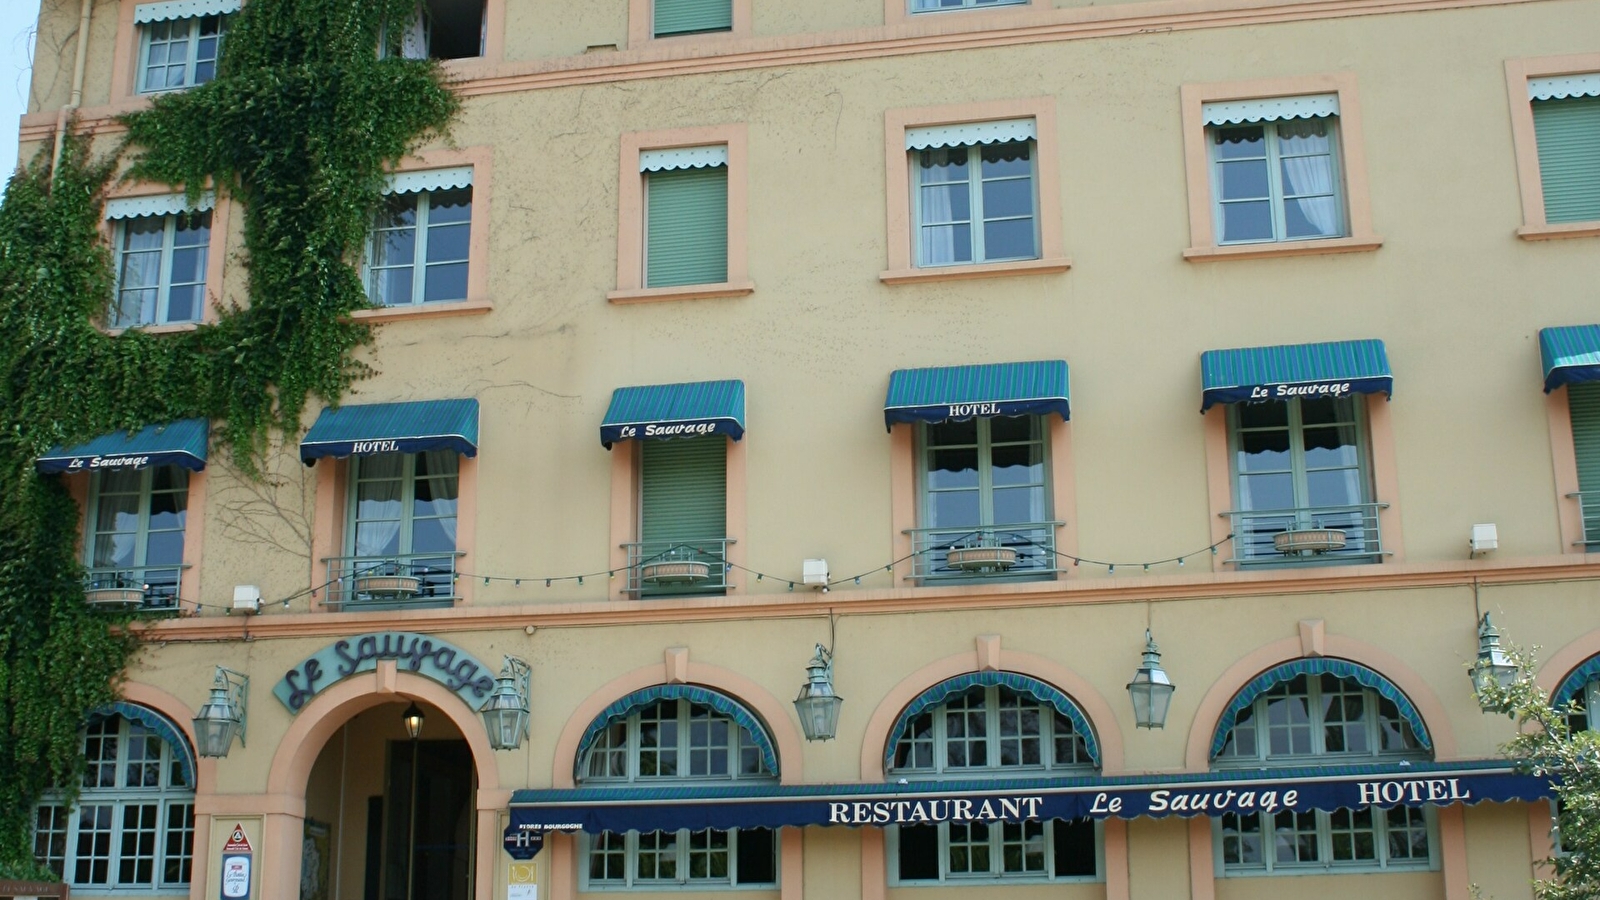 Le Sauvage Restaurant et Hôtel